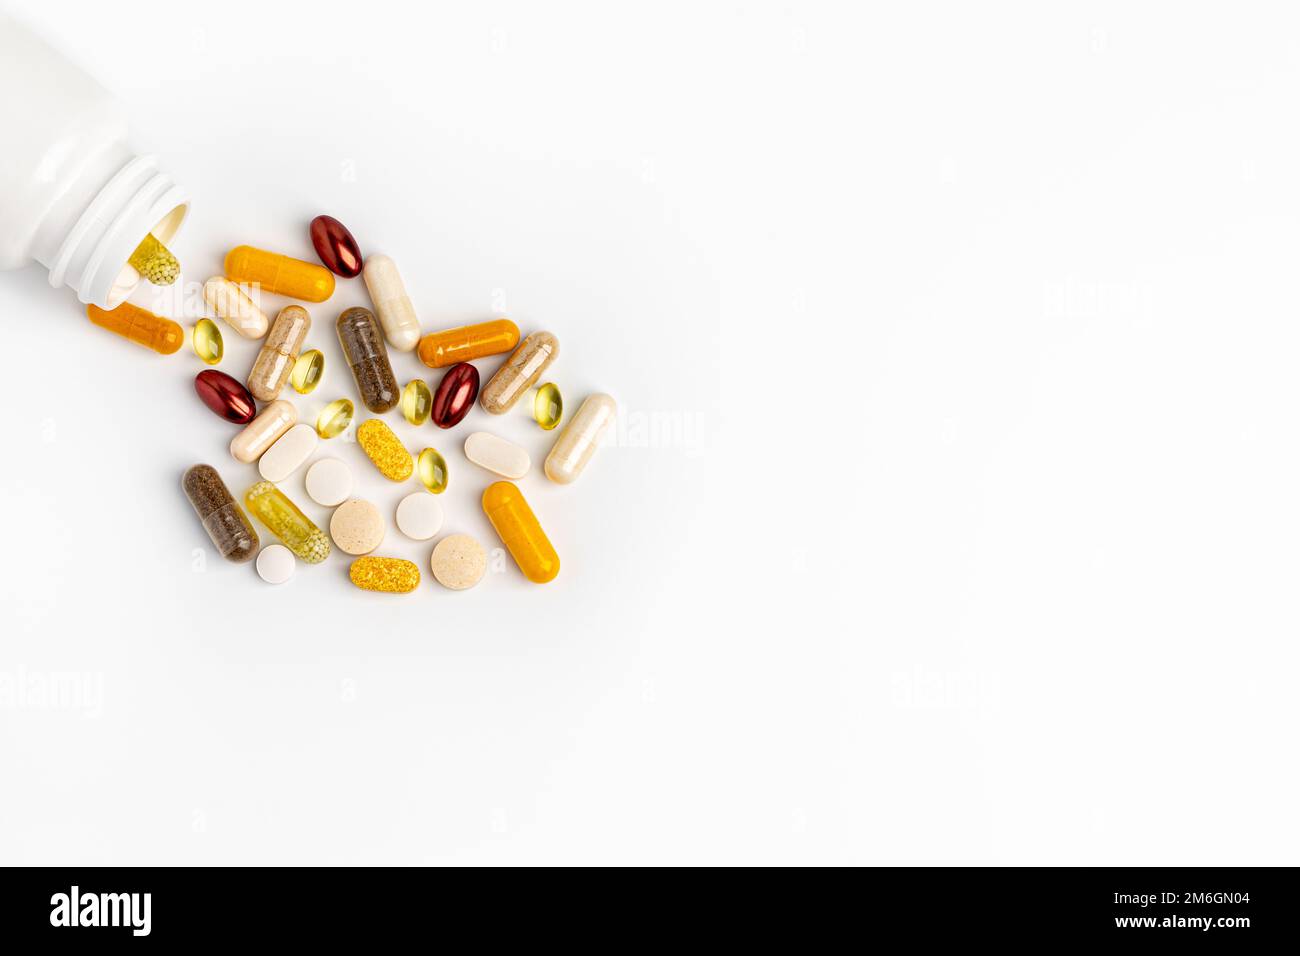 Tablettenflasche mit Vitaminen und Nahrungsergänzungsmitteln isoliert auf weißem Hintergrund. Wellness-, Gesundheits- und Ernährungskonzept. Stockfoto